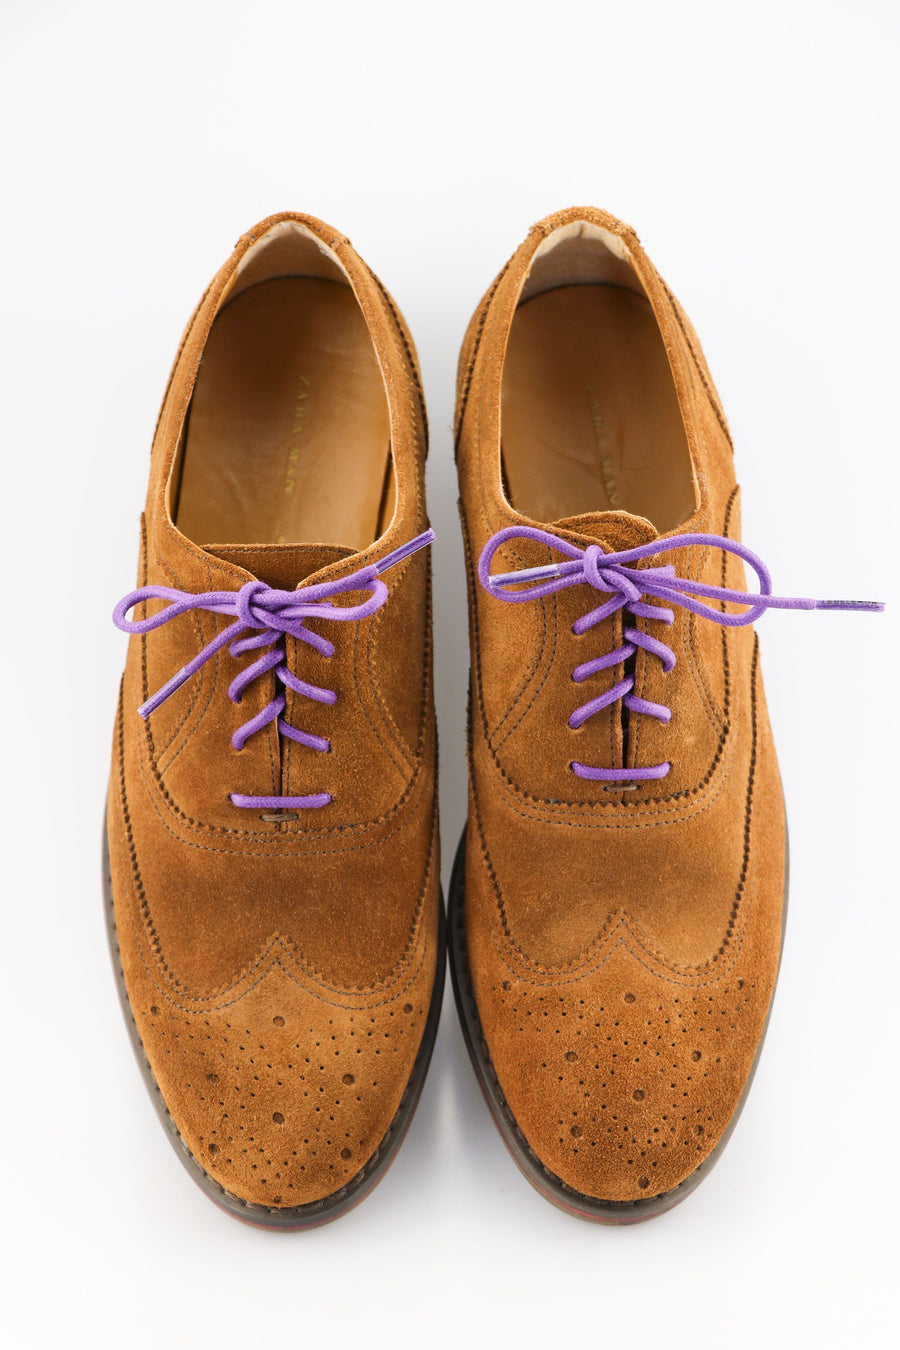 Dark Purple Shoe Laces - Violet coloured Shoelaces – Ted and Lemon